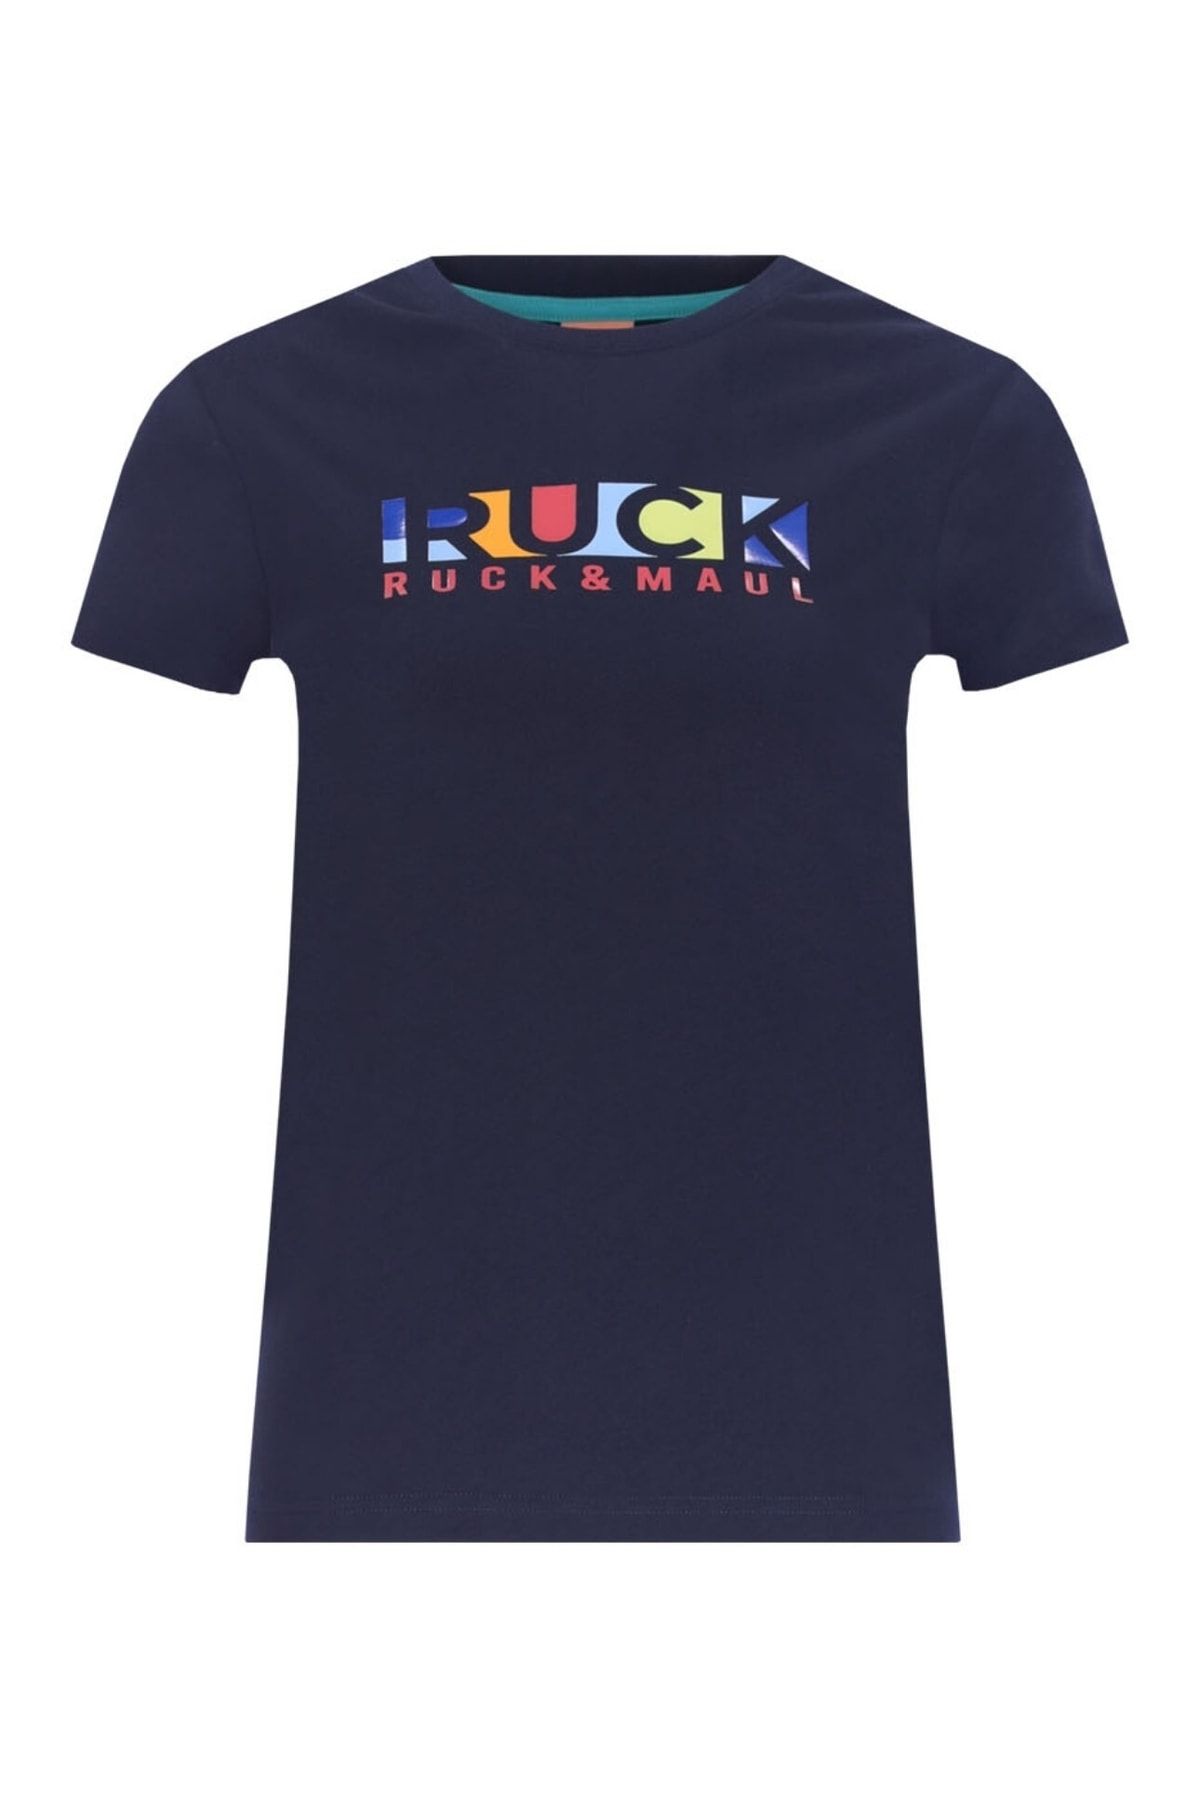 Ruck & Maul Kadın Tişört 23606 166 - Lacivert